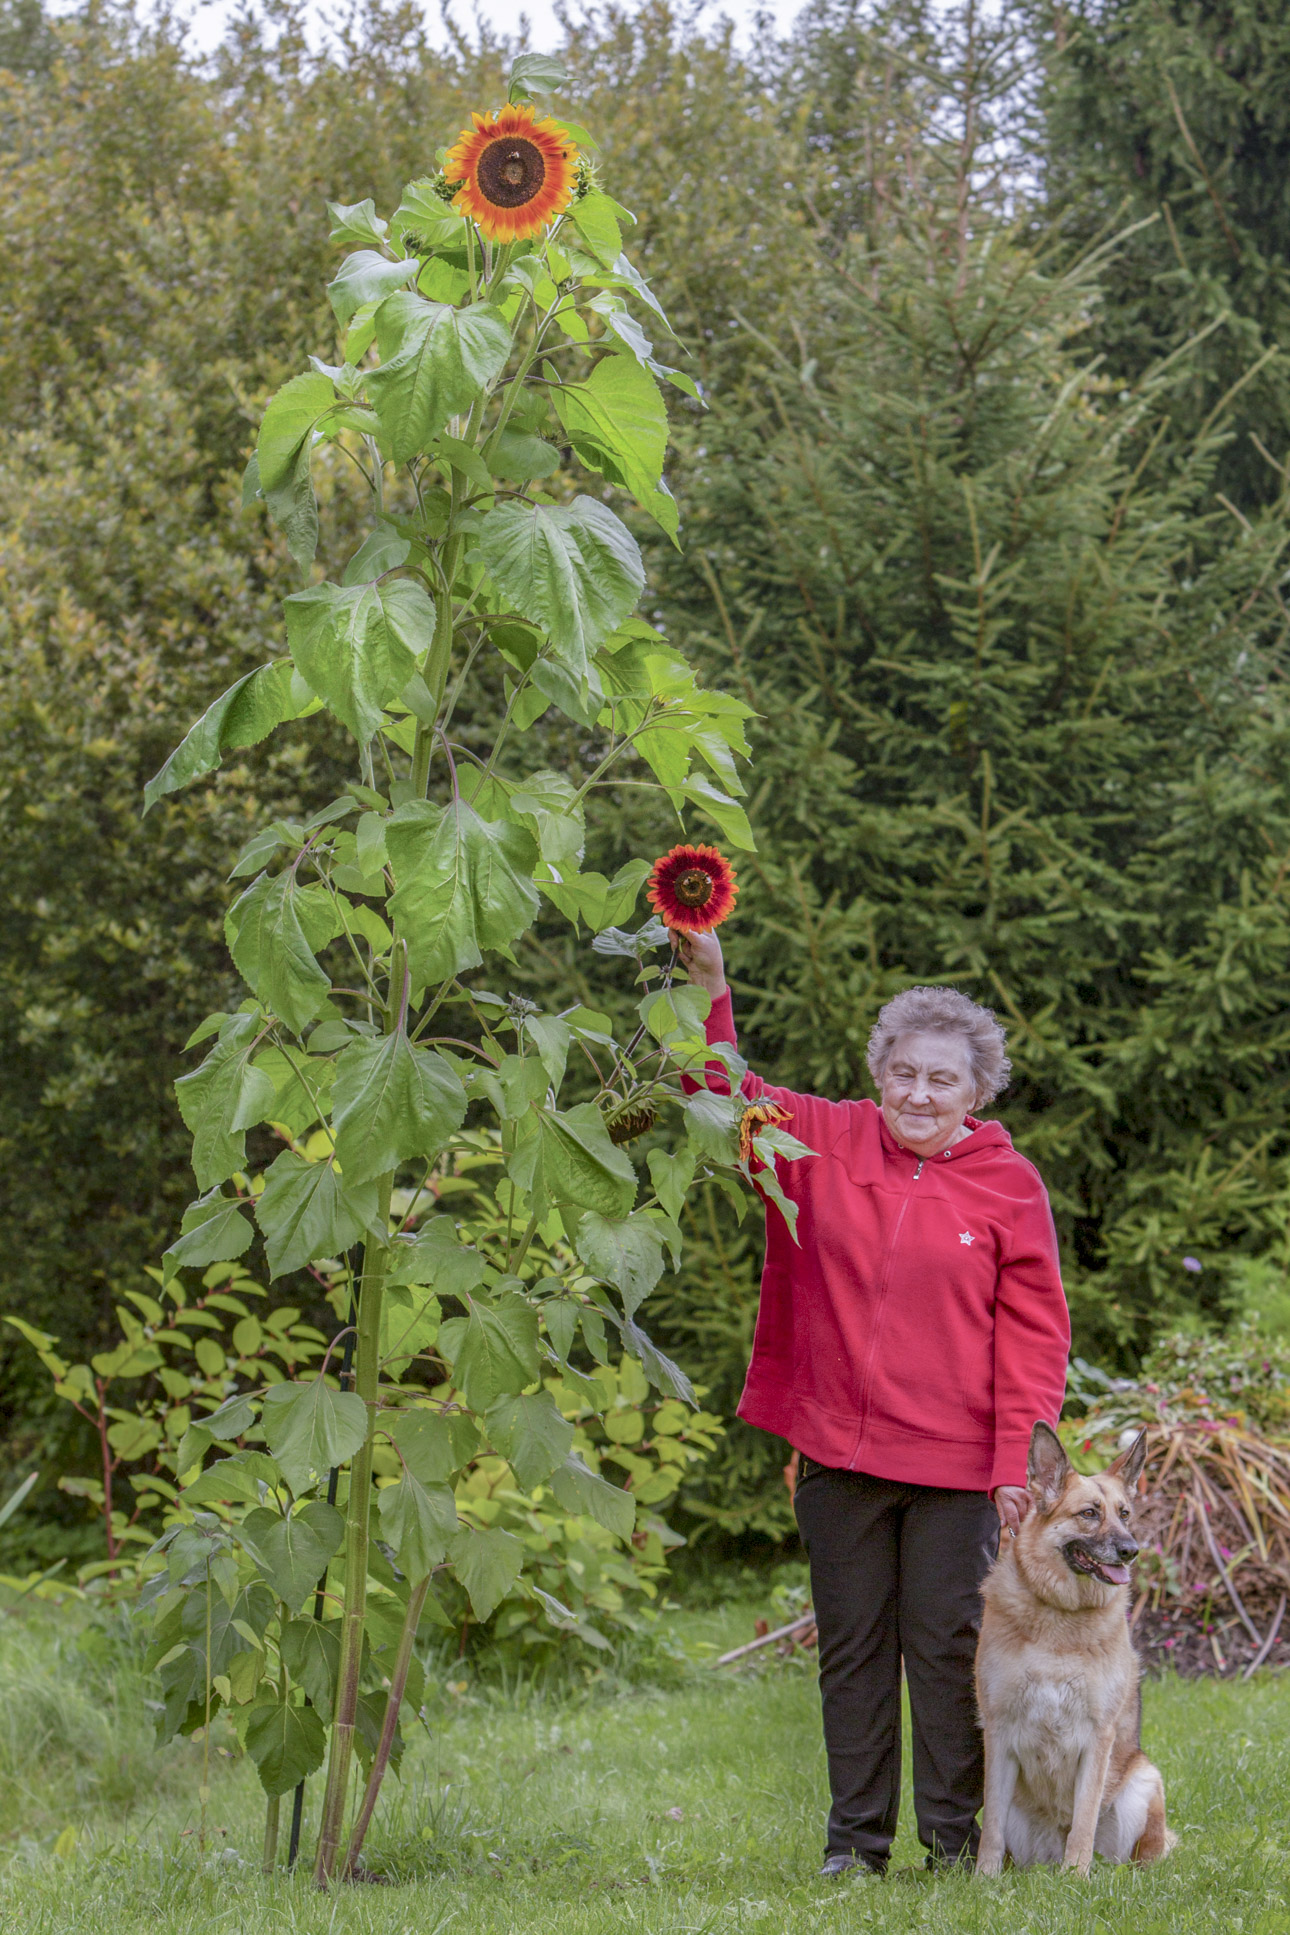 Perenaine Maie on oma pikimast aias kasvavast päevalillest peaaegu poole võrra lühem. Koos koduvalvuri Noraga hoitakse aed korras, sest Nora lilli ei söö ja mängib pigem palliga. Foto: AIGAR NAGEL